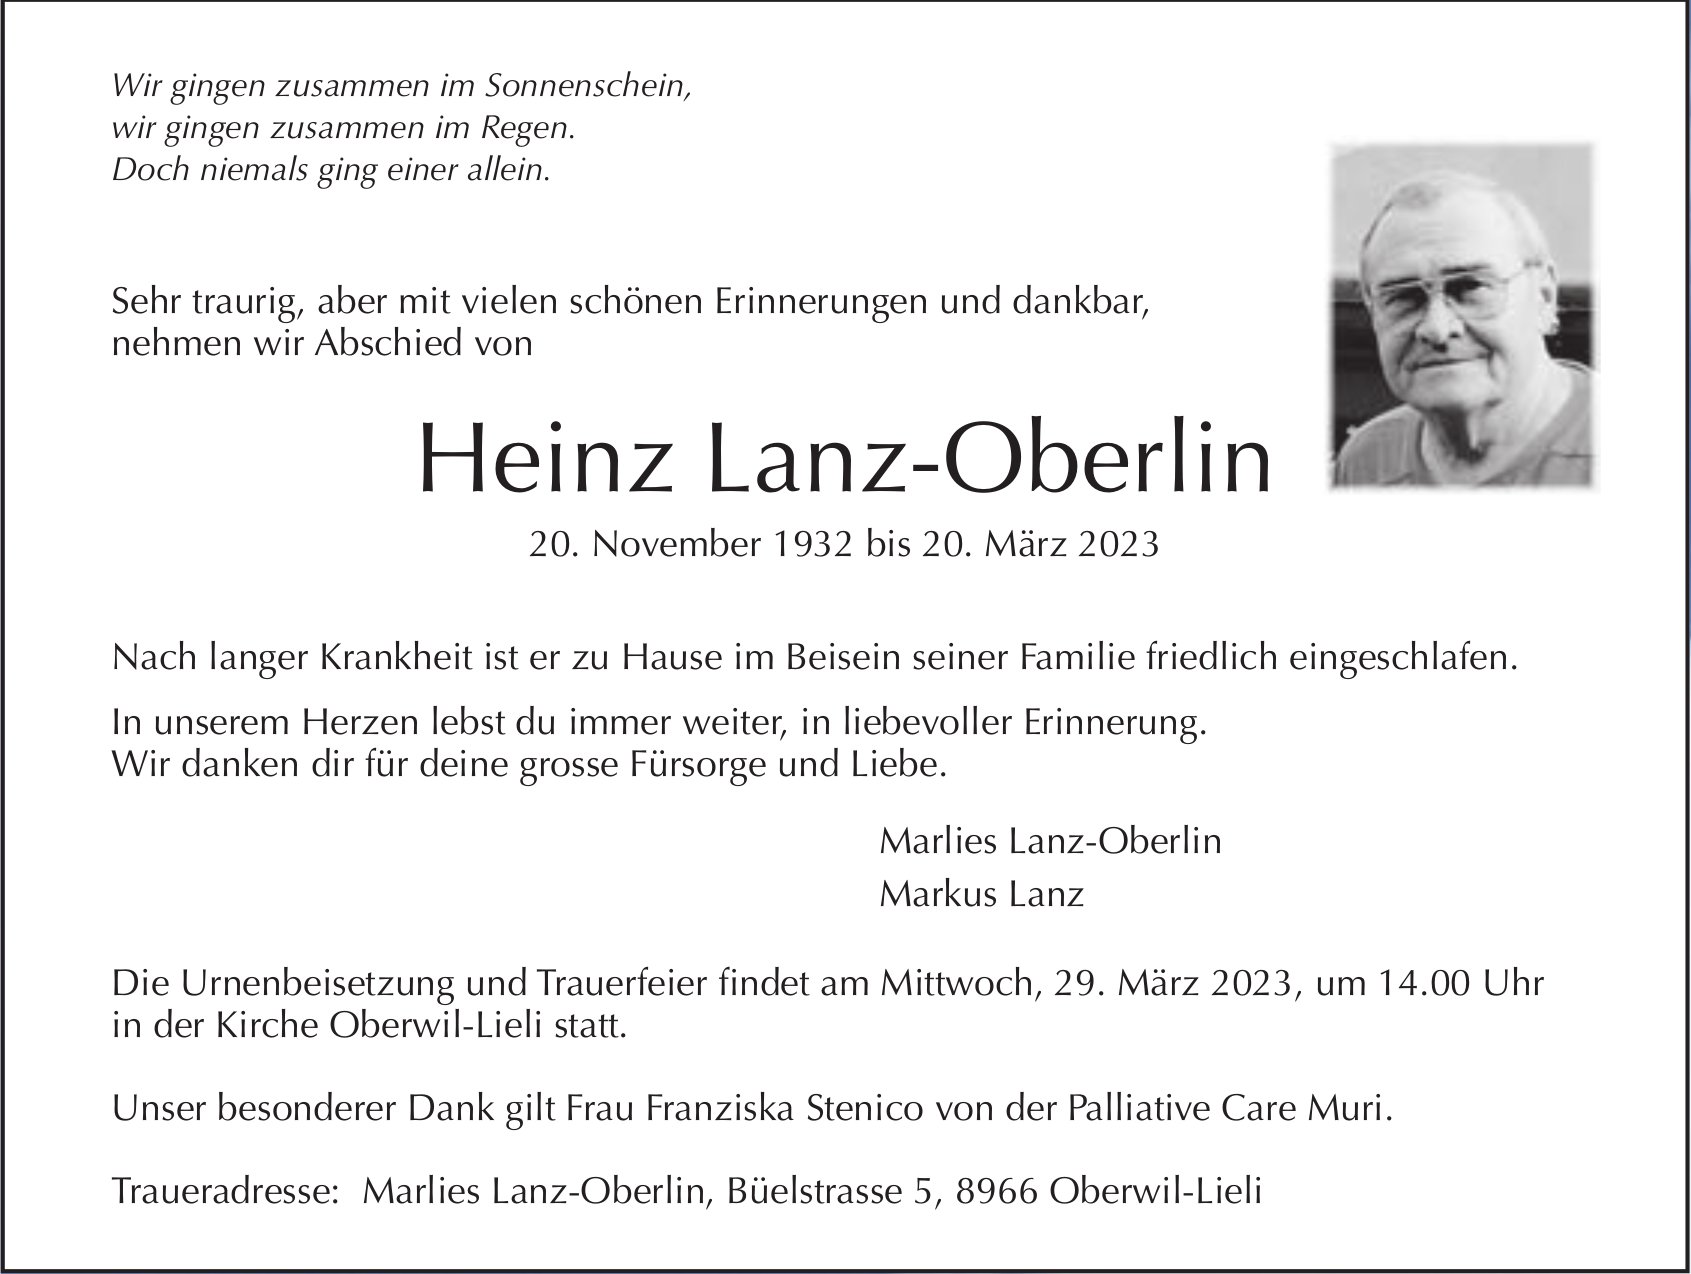 Heinz Lanz-Oberlin, März 2023 / TA